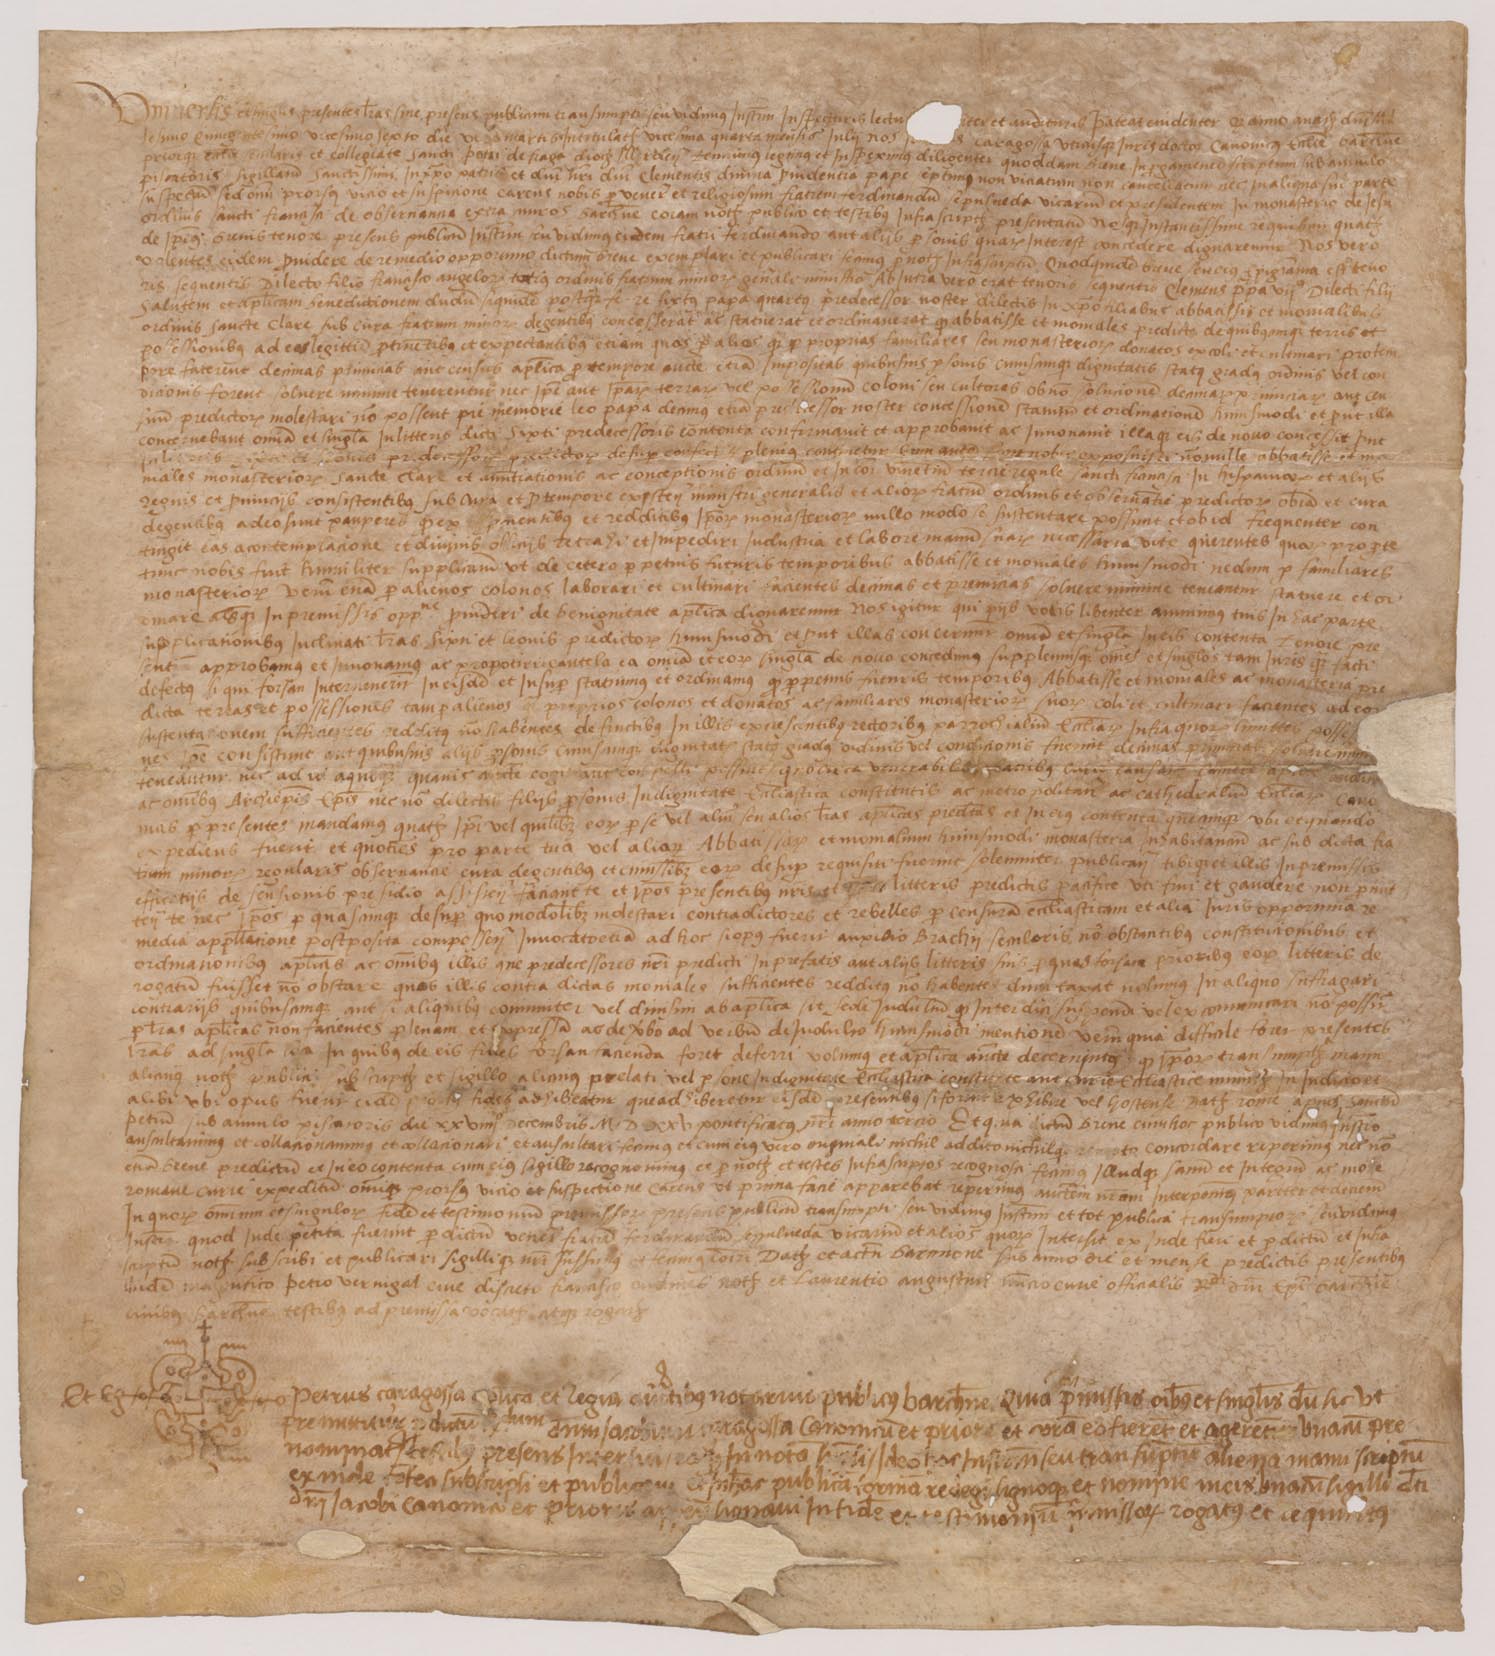 Traslado notarial de un breve de Clemente VII  en el que confirma privilegios a la 1ª y 2ª Orden de San Francisco y fechado el 29 de diciembre de 1525.